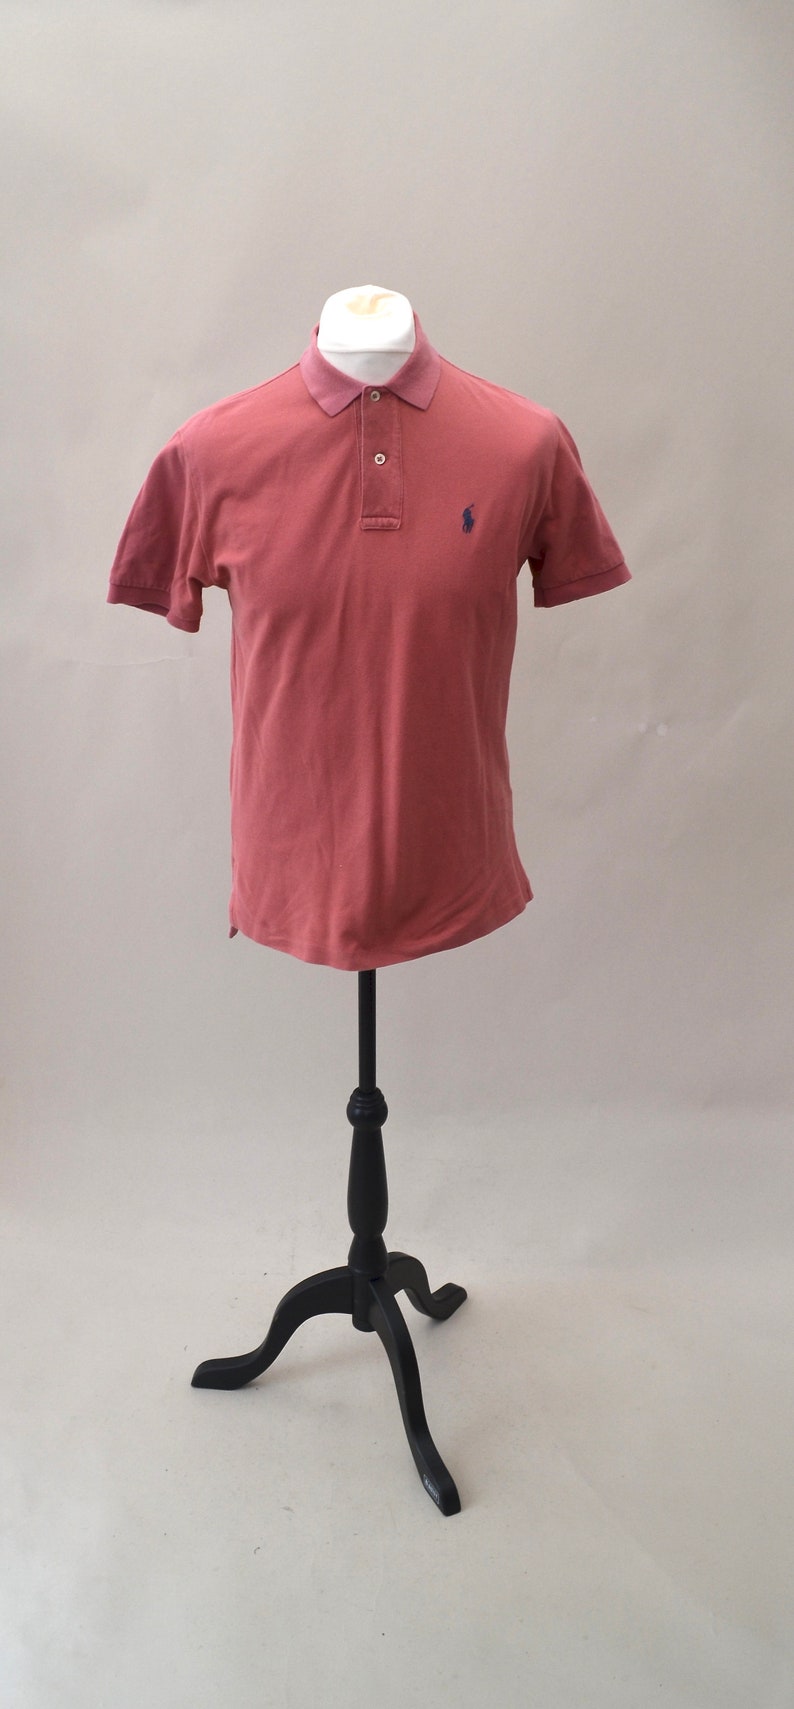 salmon pink ralph lauren shirt